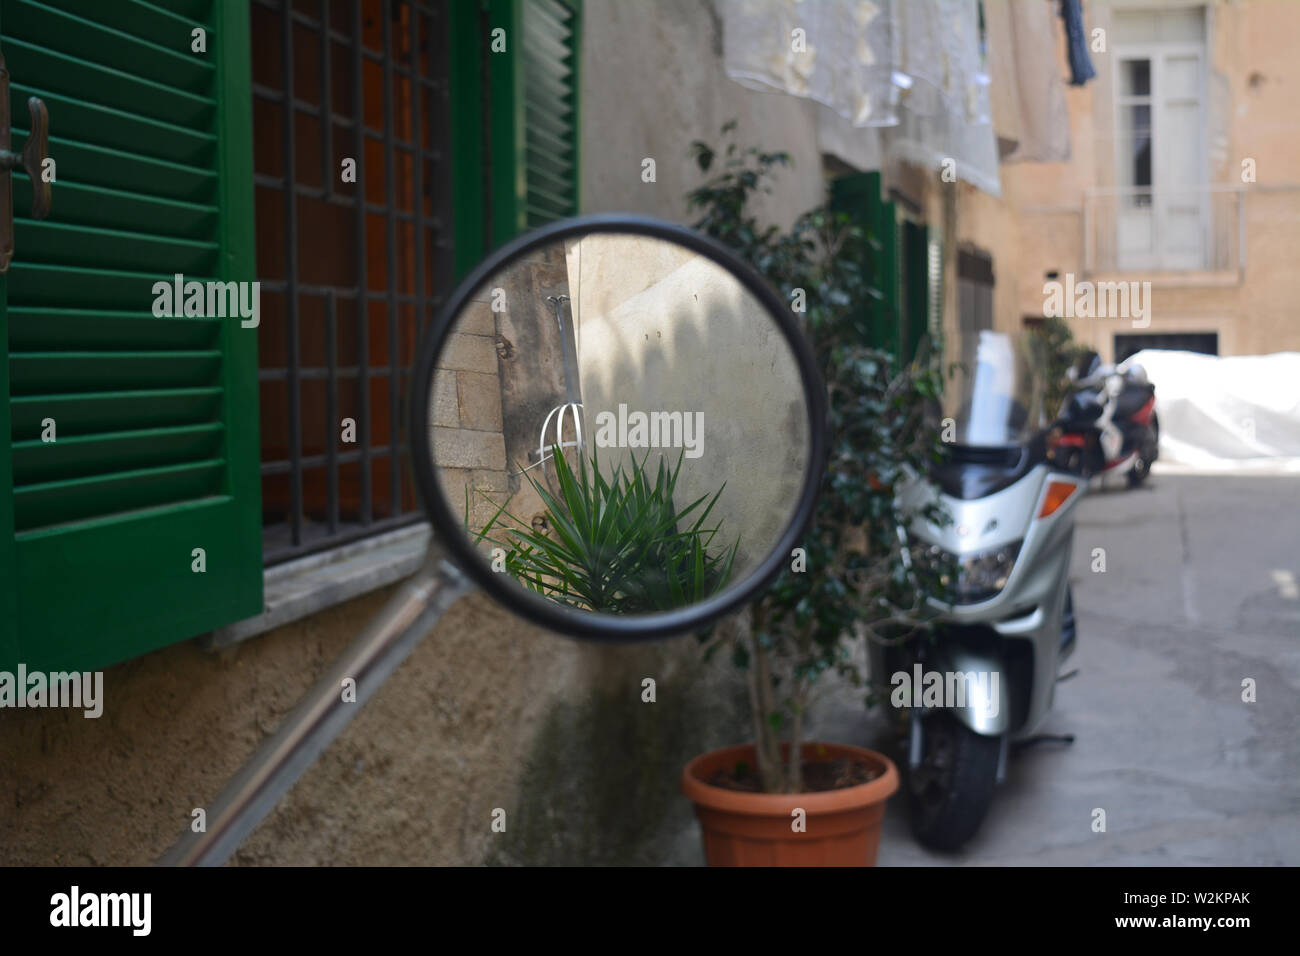 Motociclo round dello specchietto retrovisore, su una piccola strada in una città tradizionale in Italia, Calabria. Fotografia perfetta per incorniciare. Foto Stock